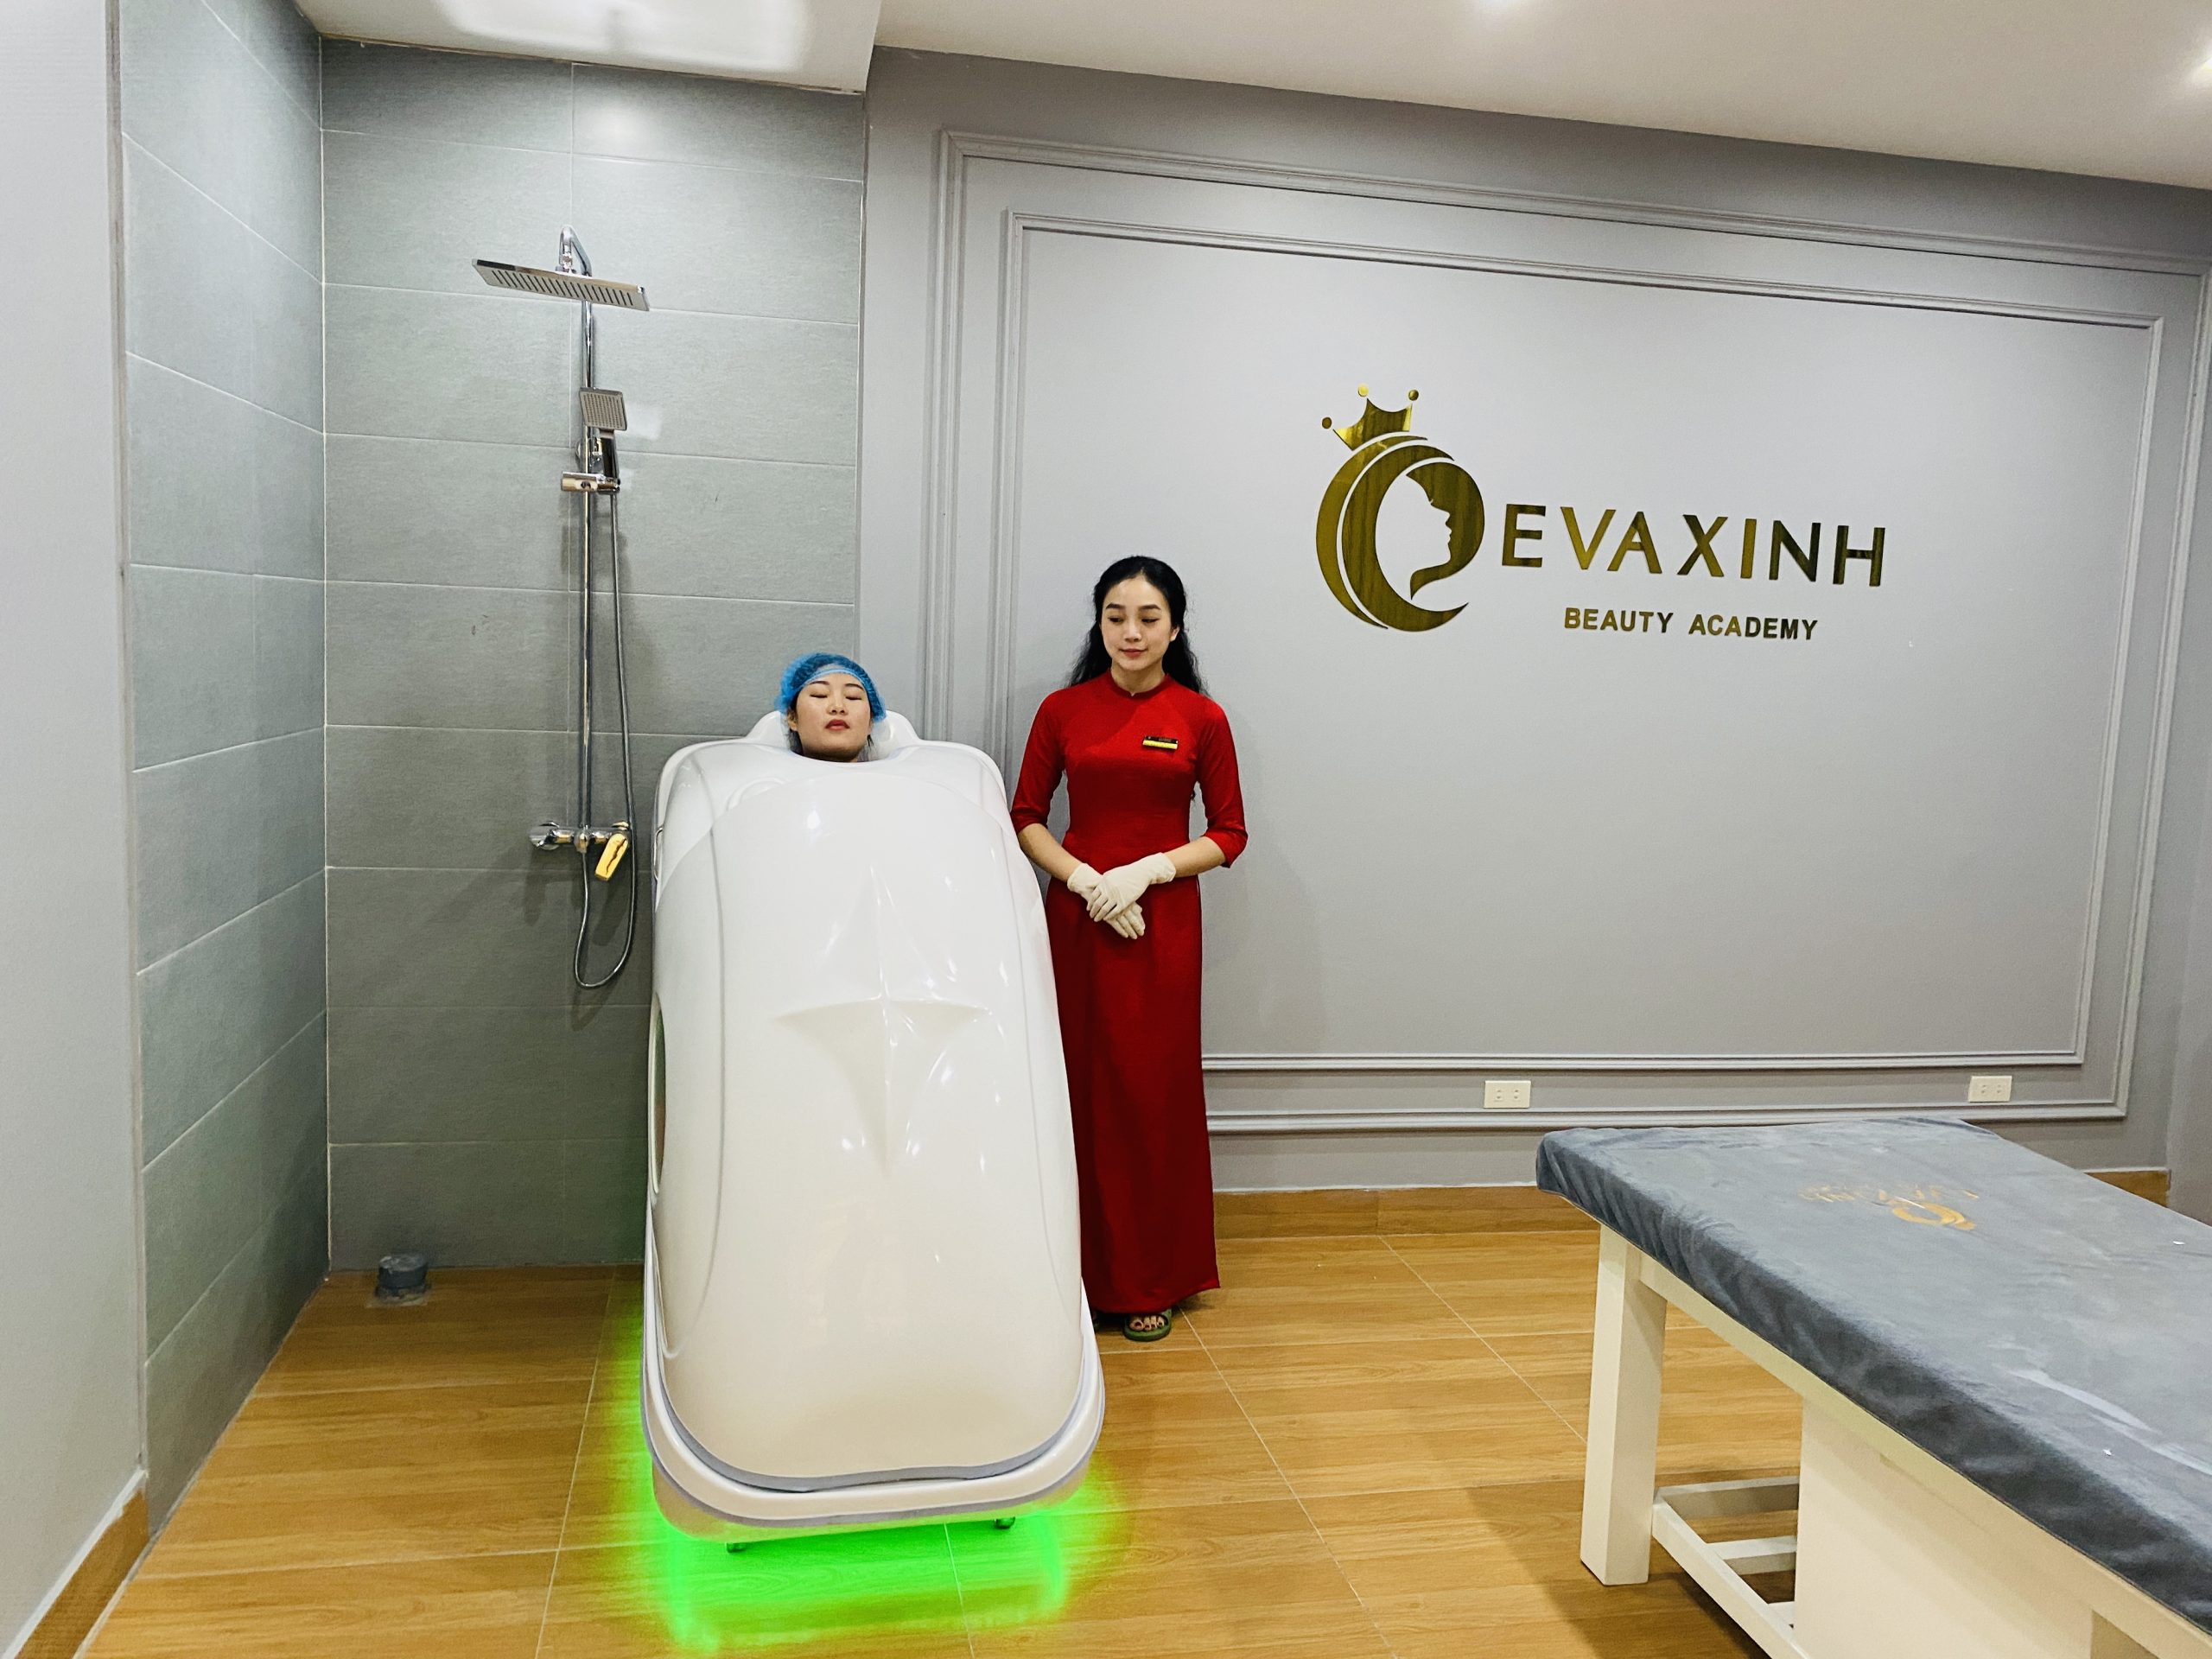 Eva Xinh được trang bị các thiết bị làm đẹp công nghệ cao